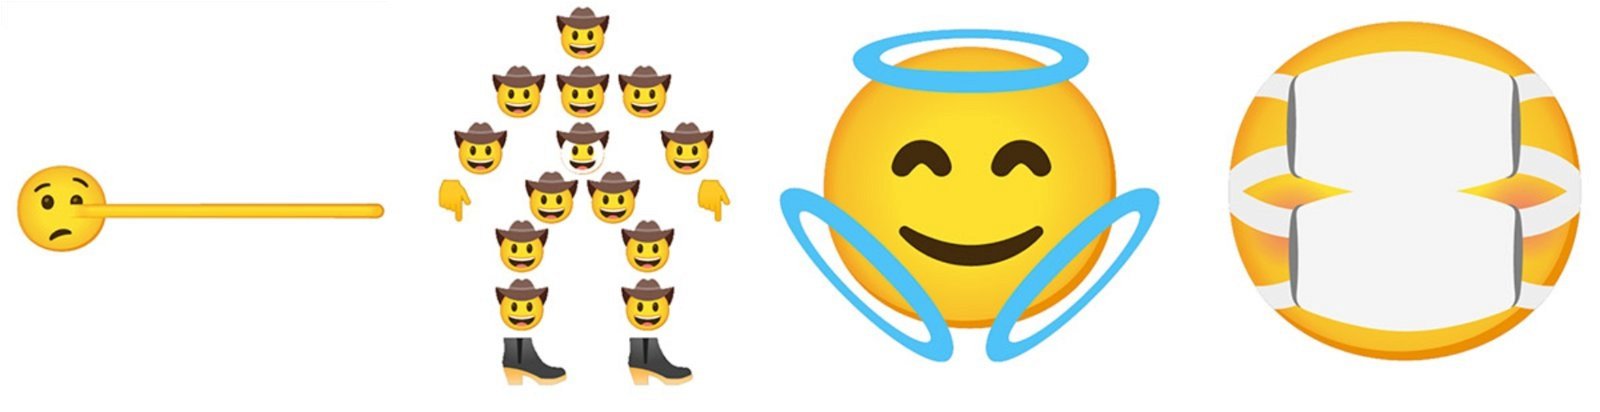 emojis combinados de Gboard 3